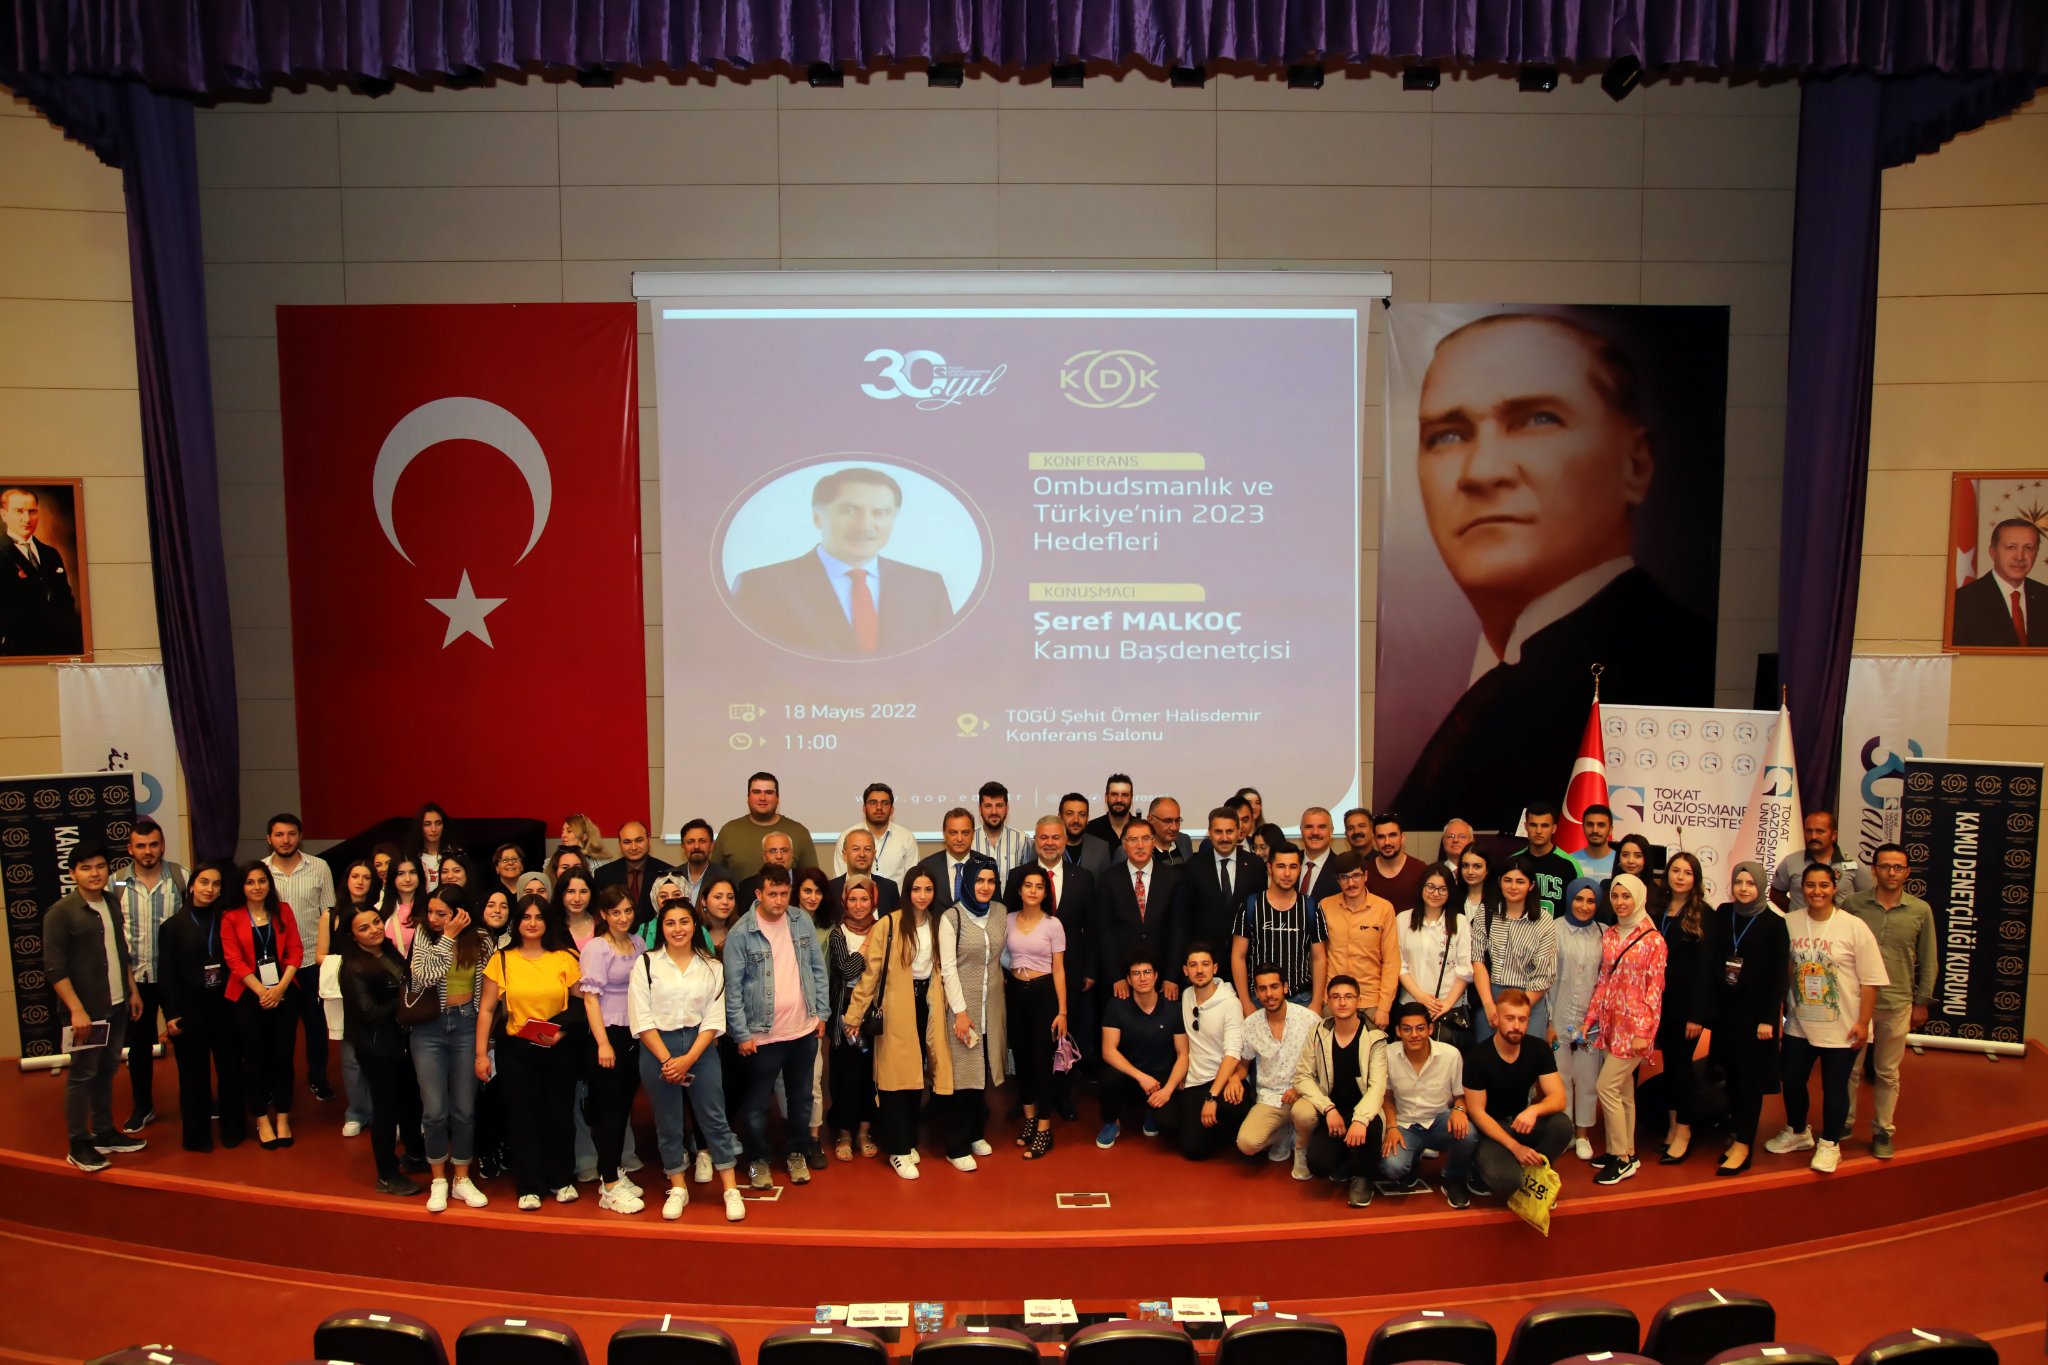 Tokat’ta, “Ombudsmanlık ve Türkiye'nin 2023 Hedefleri” konferansı